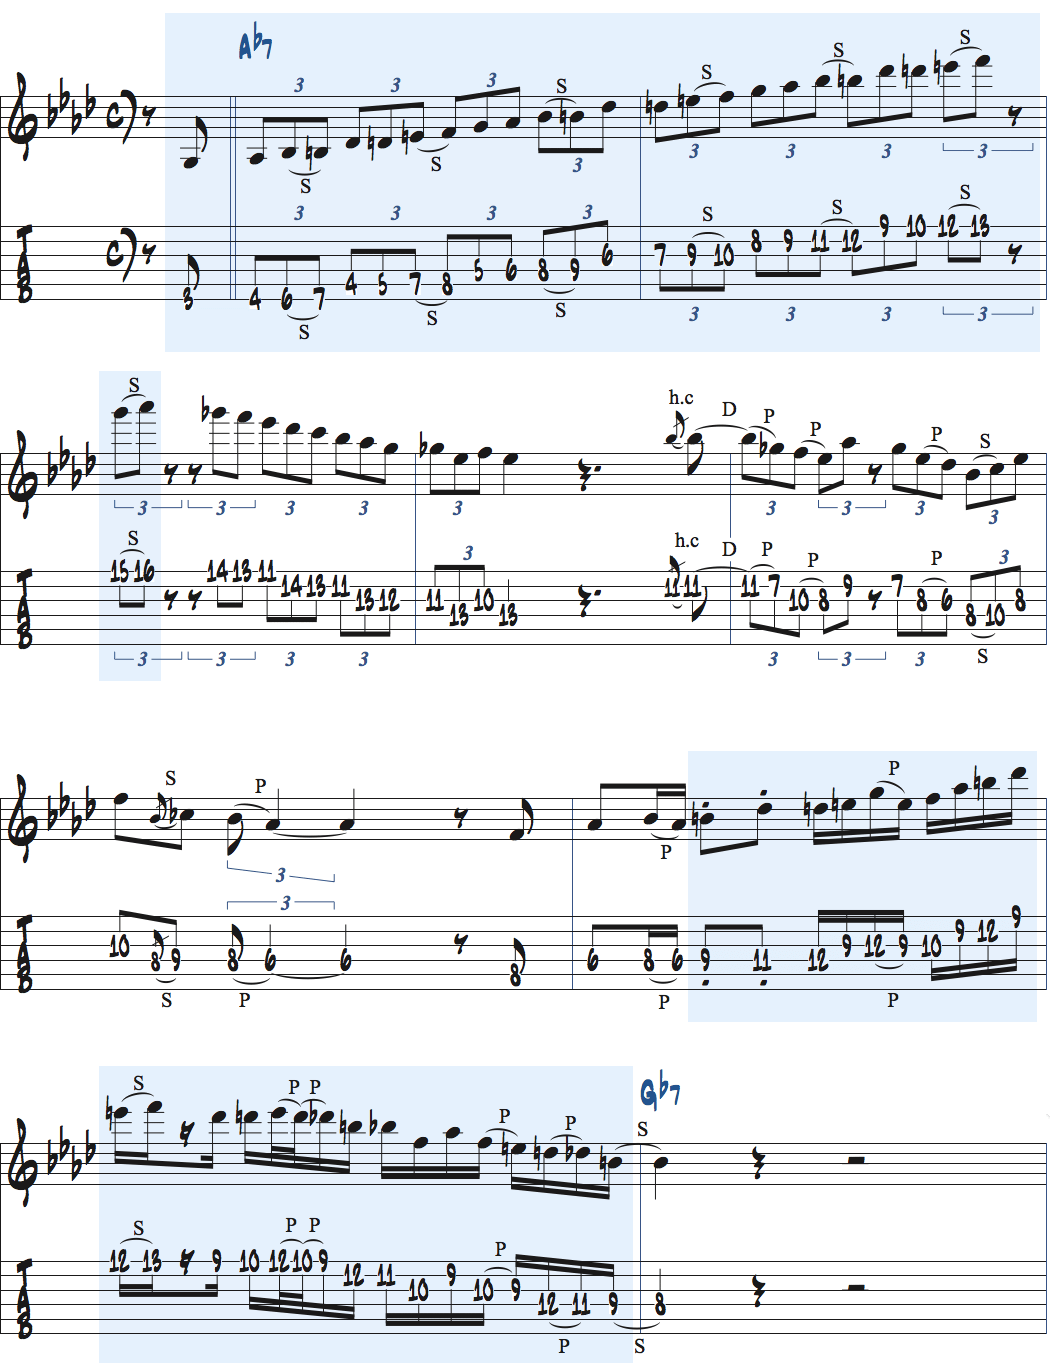 ディミニッシュスケールを使ったアドリブ例楽譜ページ1